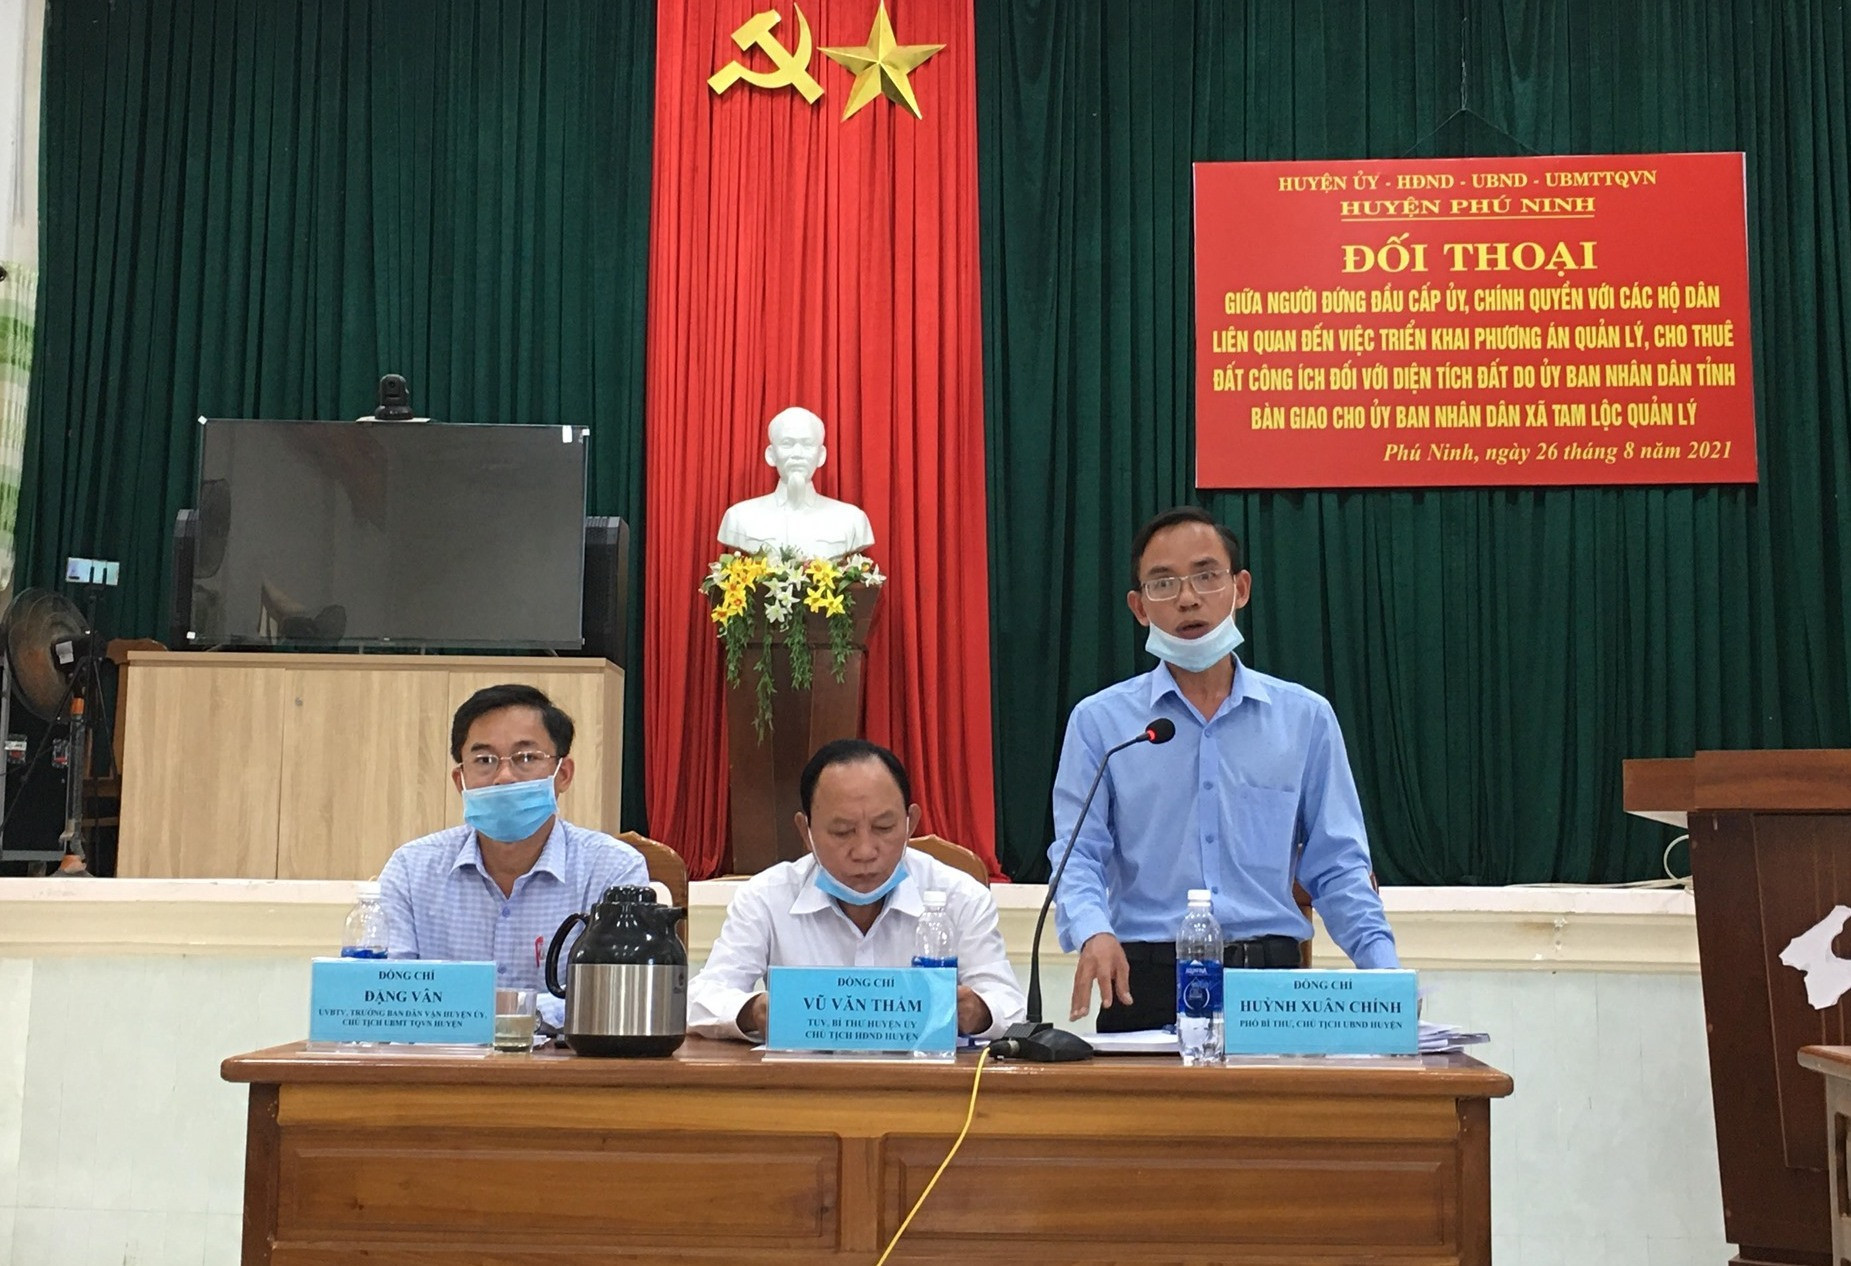 Chính quyền đề nghị người dân xã Tam Lộc cần hợp tác, cầu thị để tháo gỡ các vướng mắc liên quan. Ảnh: C.Đ